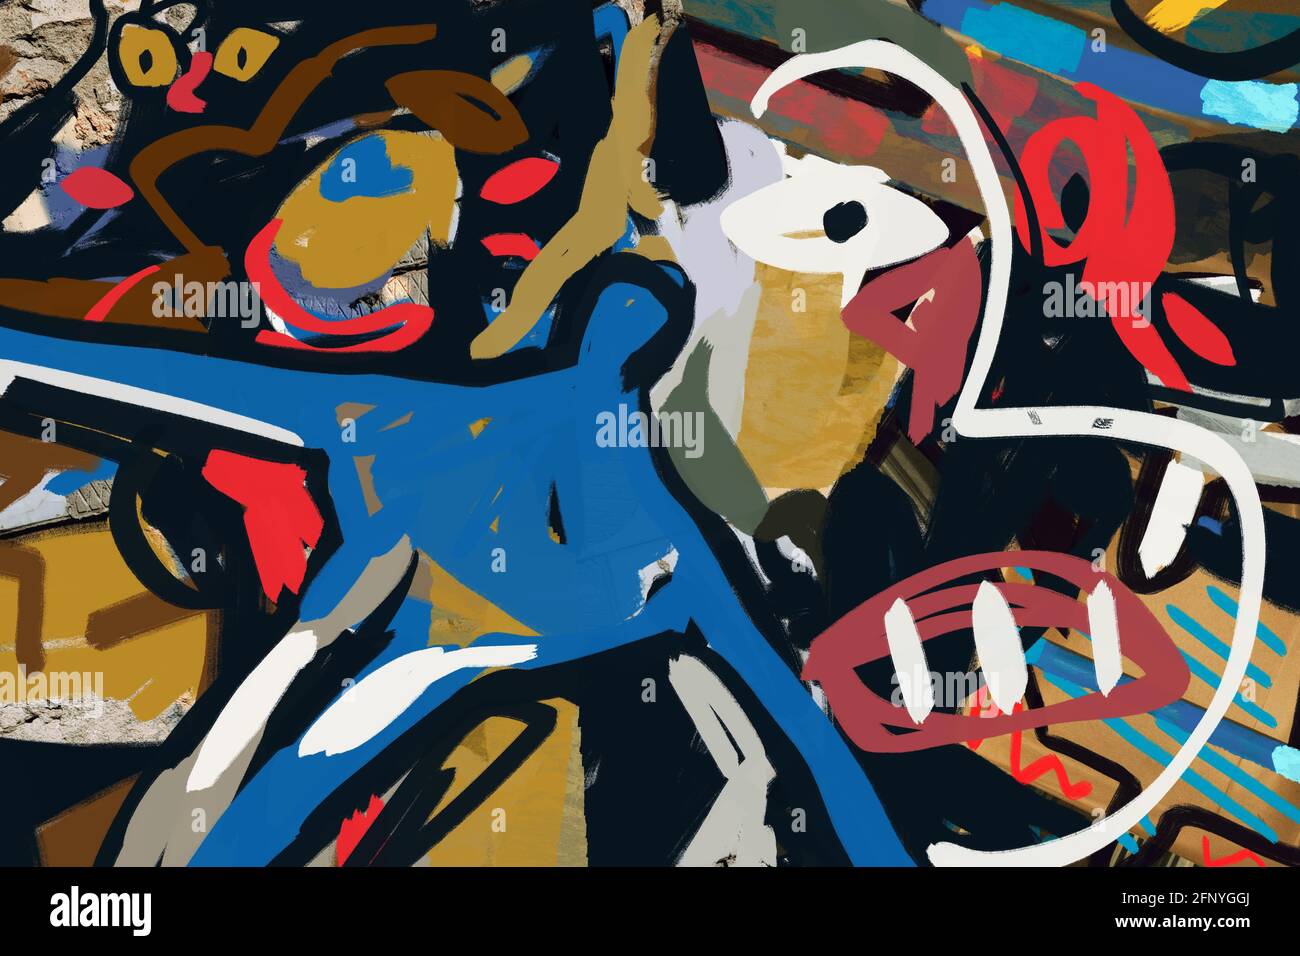 Street Art Graffiti Illustration mit Mix fotografische Collage. Basquiat und Post Expressionismus Art Vibe. Katze, menschliche Figur und Monster. Gruselig und Fu Stockfoto